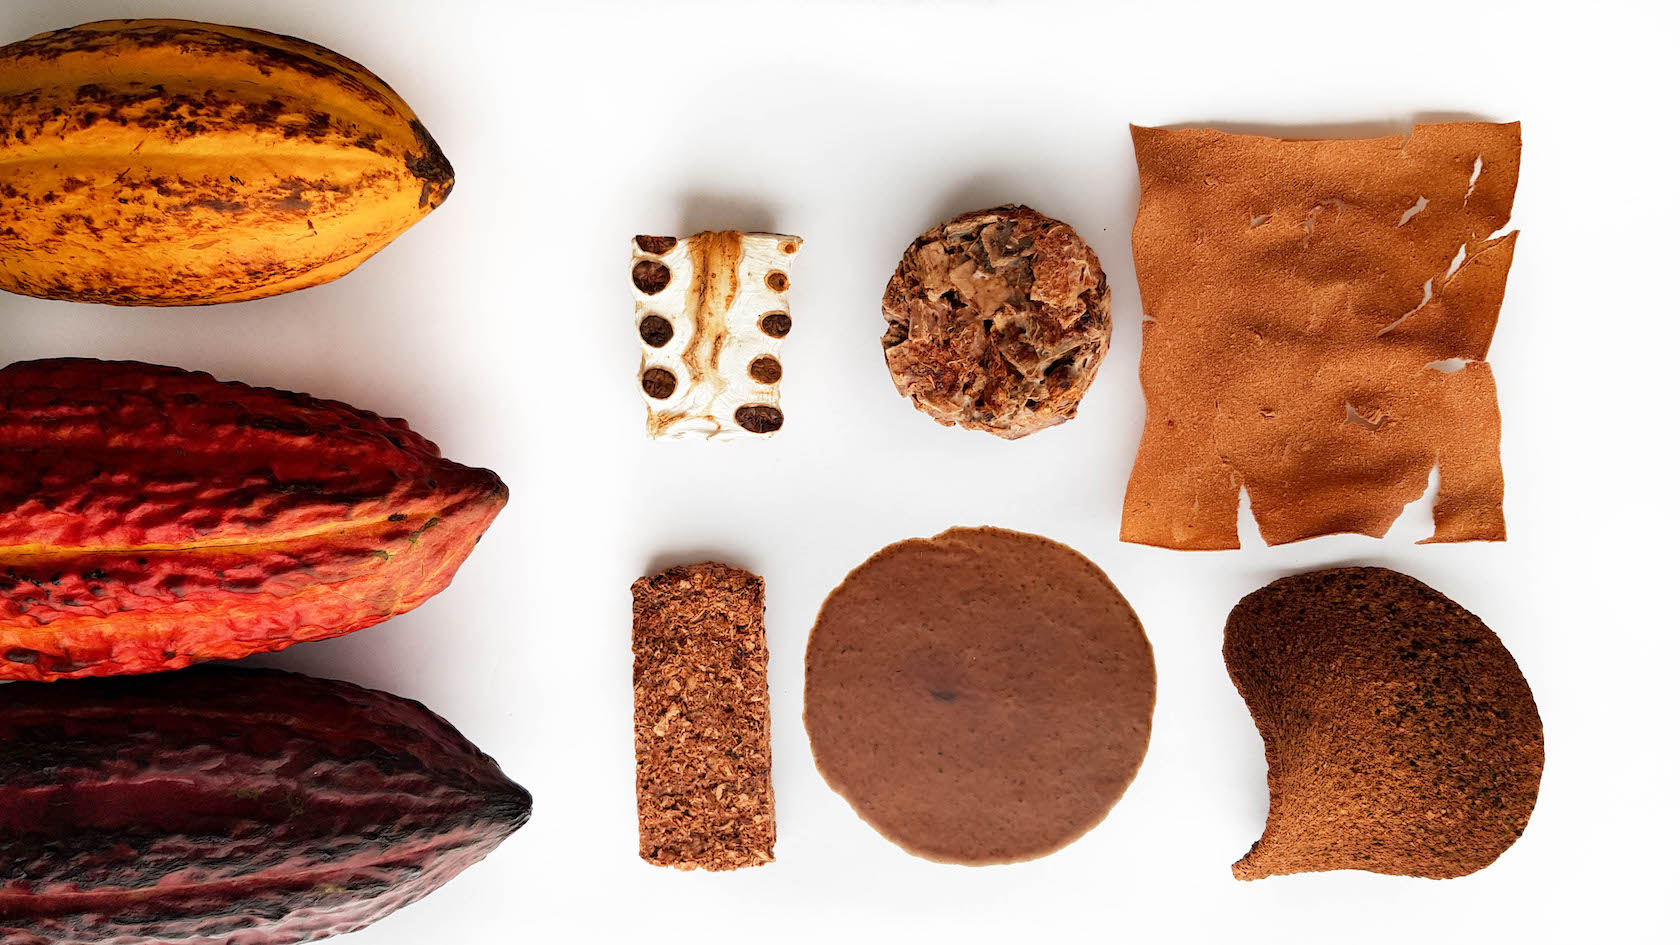 Esempi di biomateriali ricavati dagli scarti di lavorazione del cacao, Kajkao by Lako - courtesy Claudia Valverde